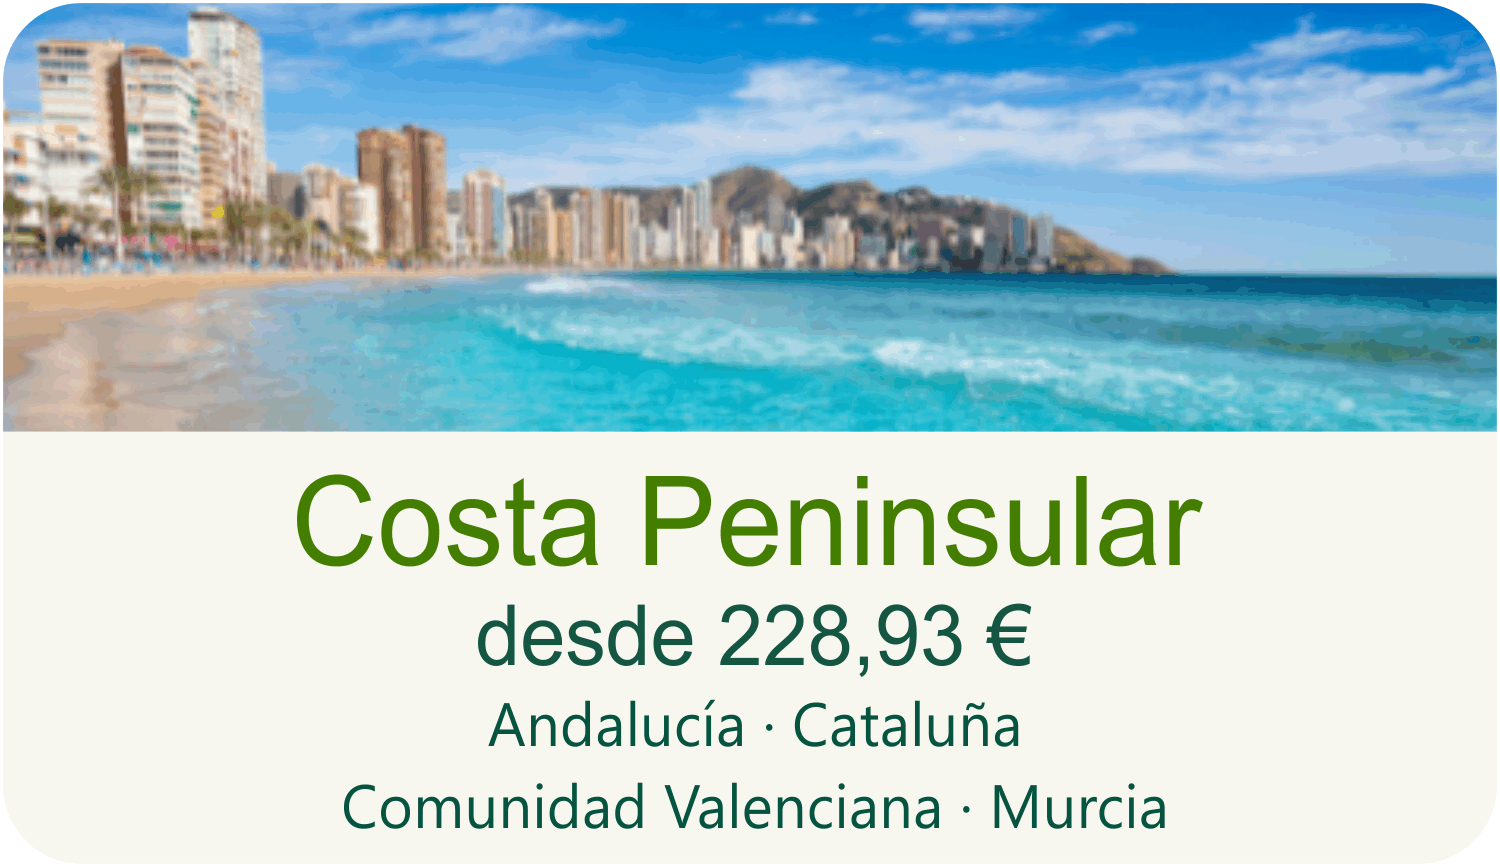 Costa Insular desde 267,63 euros. Islas Baleares y Canarias